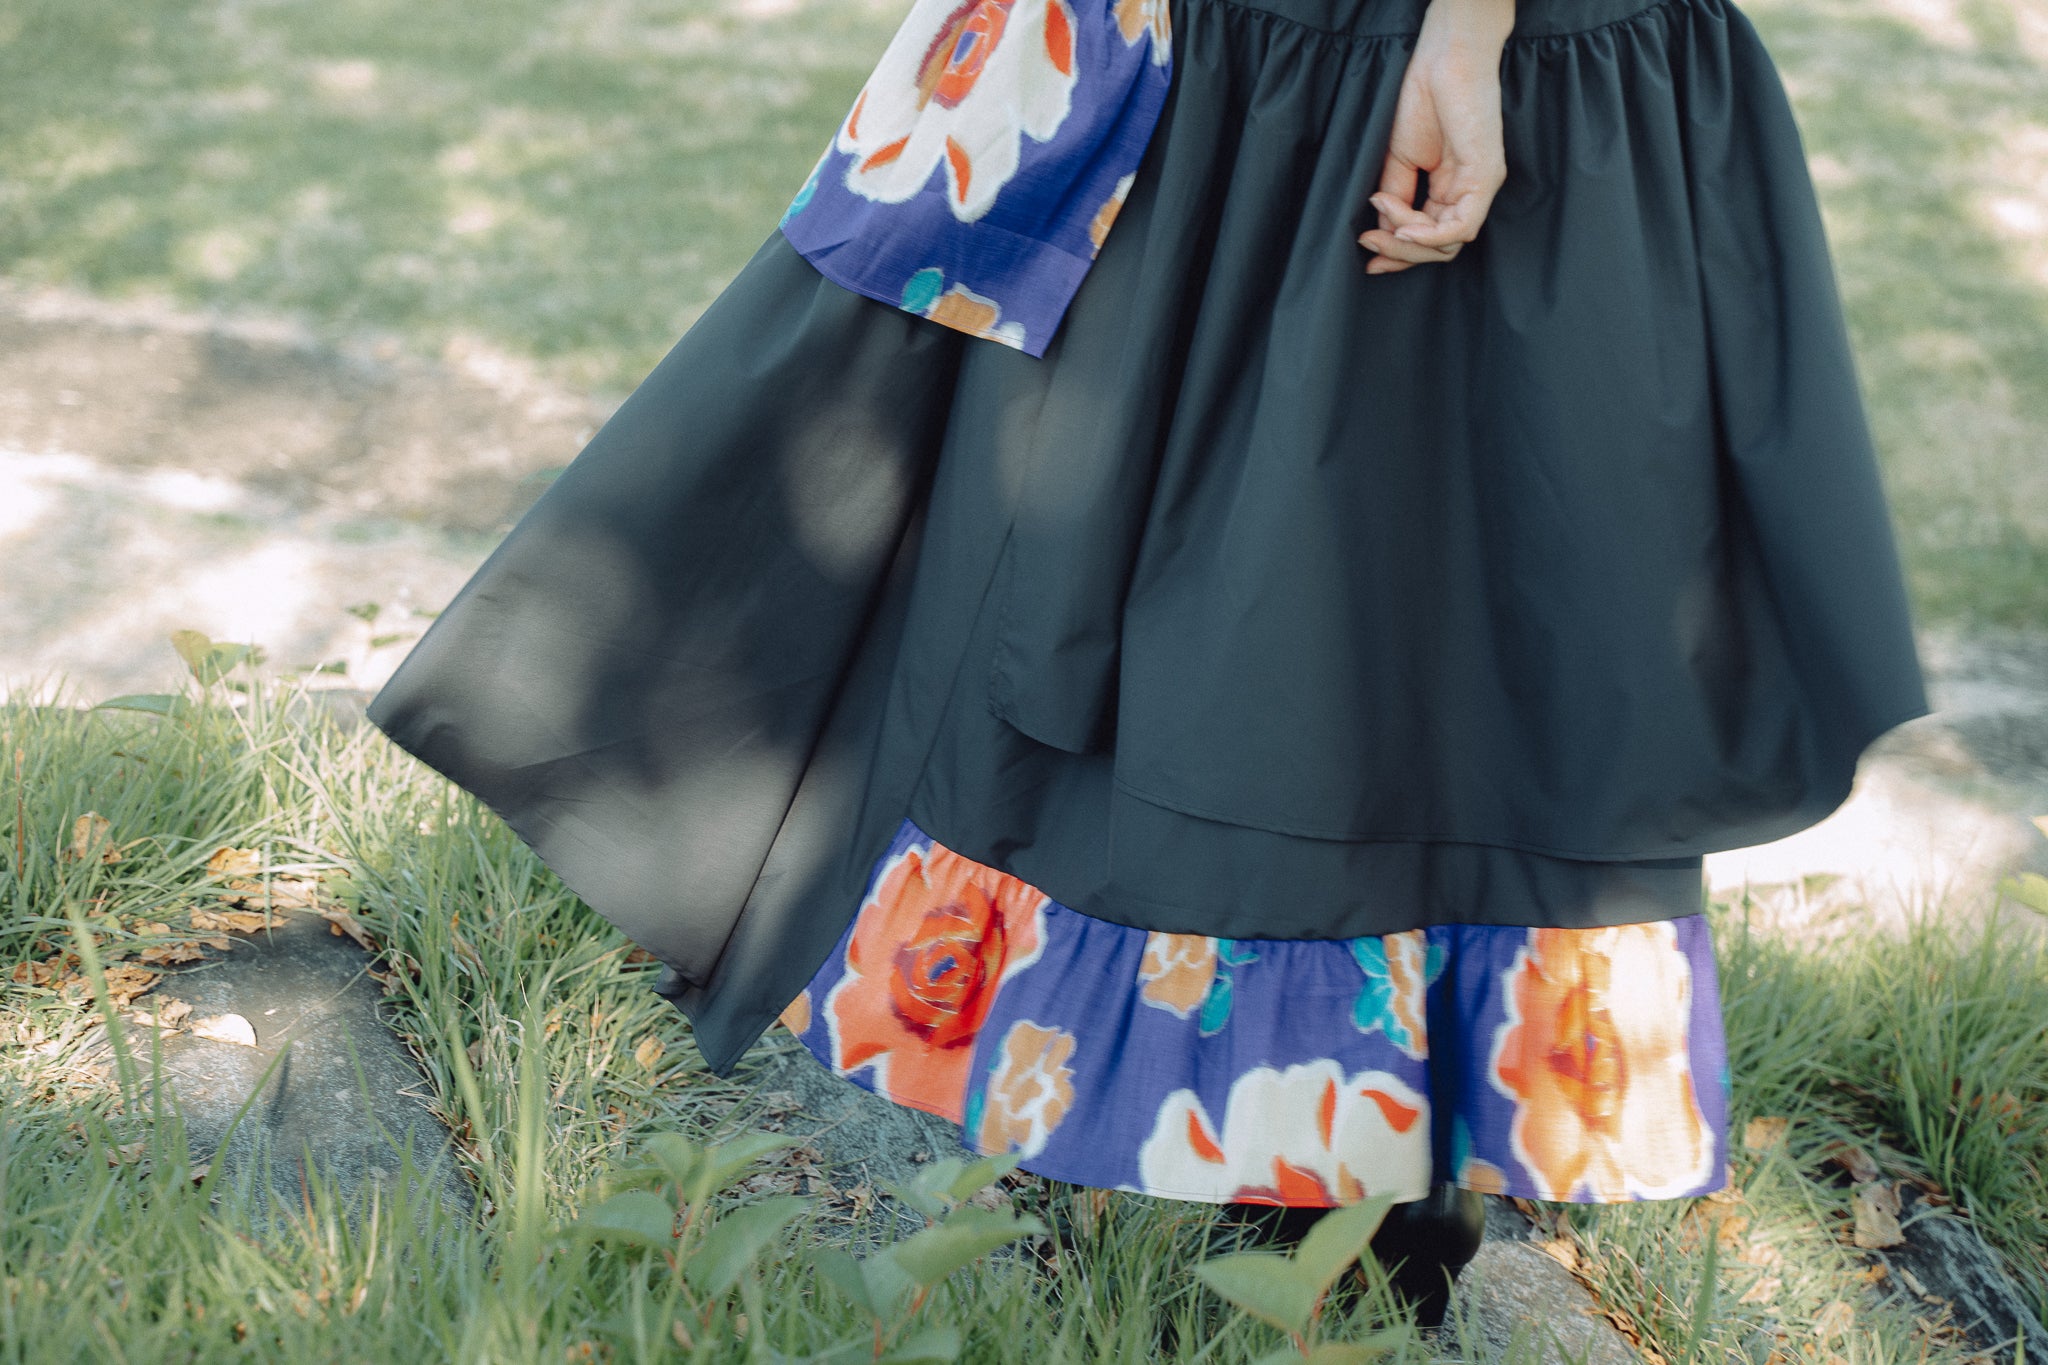 Meisen layerd skirt / rose